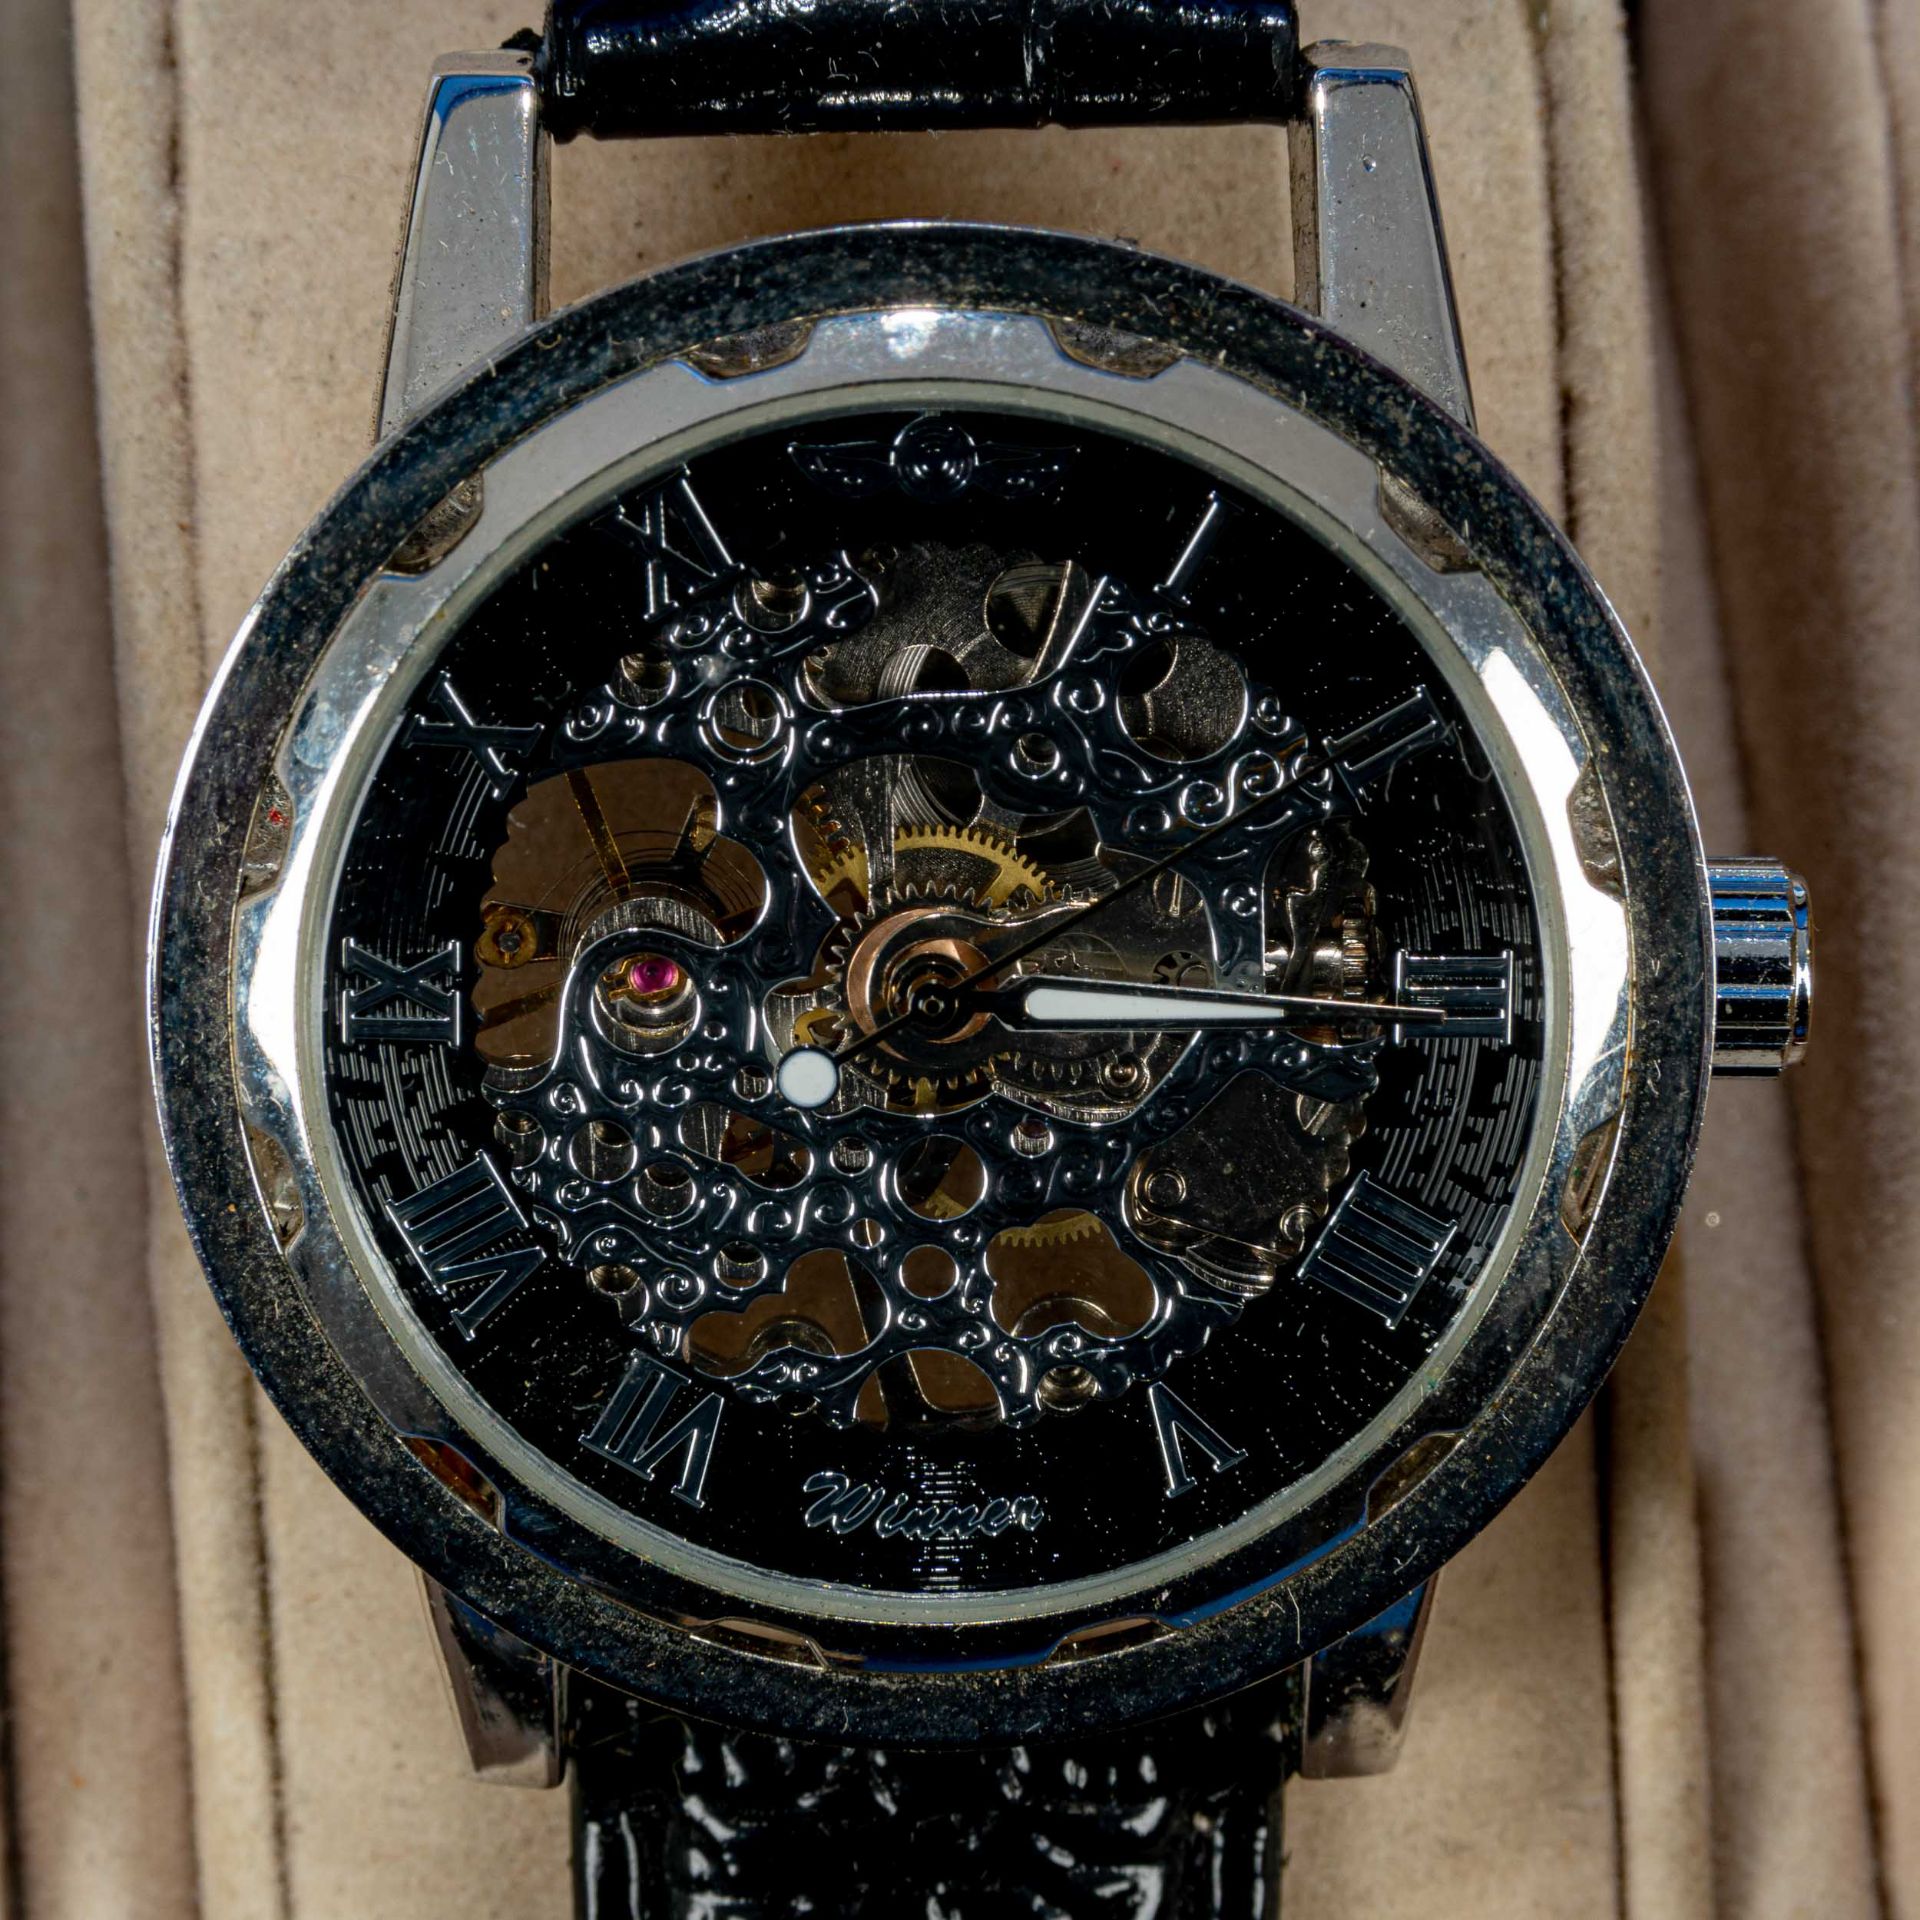 7teilige Uhrensammlung, u. a. der Marke Swatch; versch. Alter, Größen, Materialien, Hersteller, Wer - Image 5 of 8